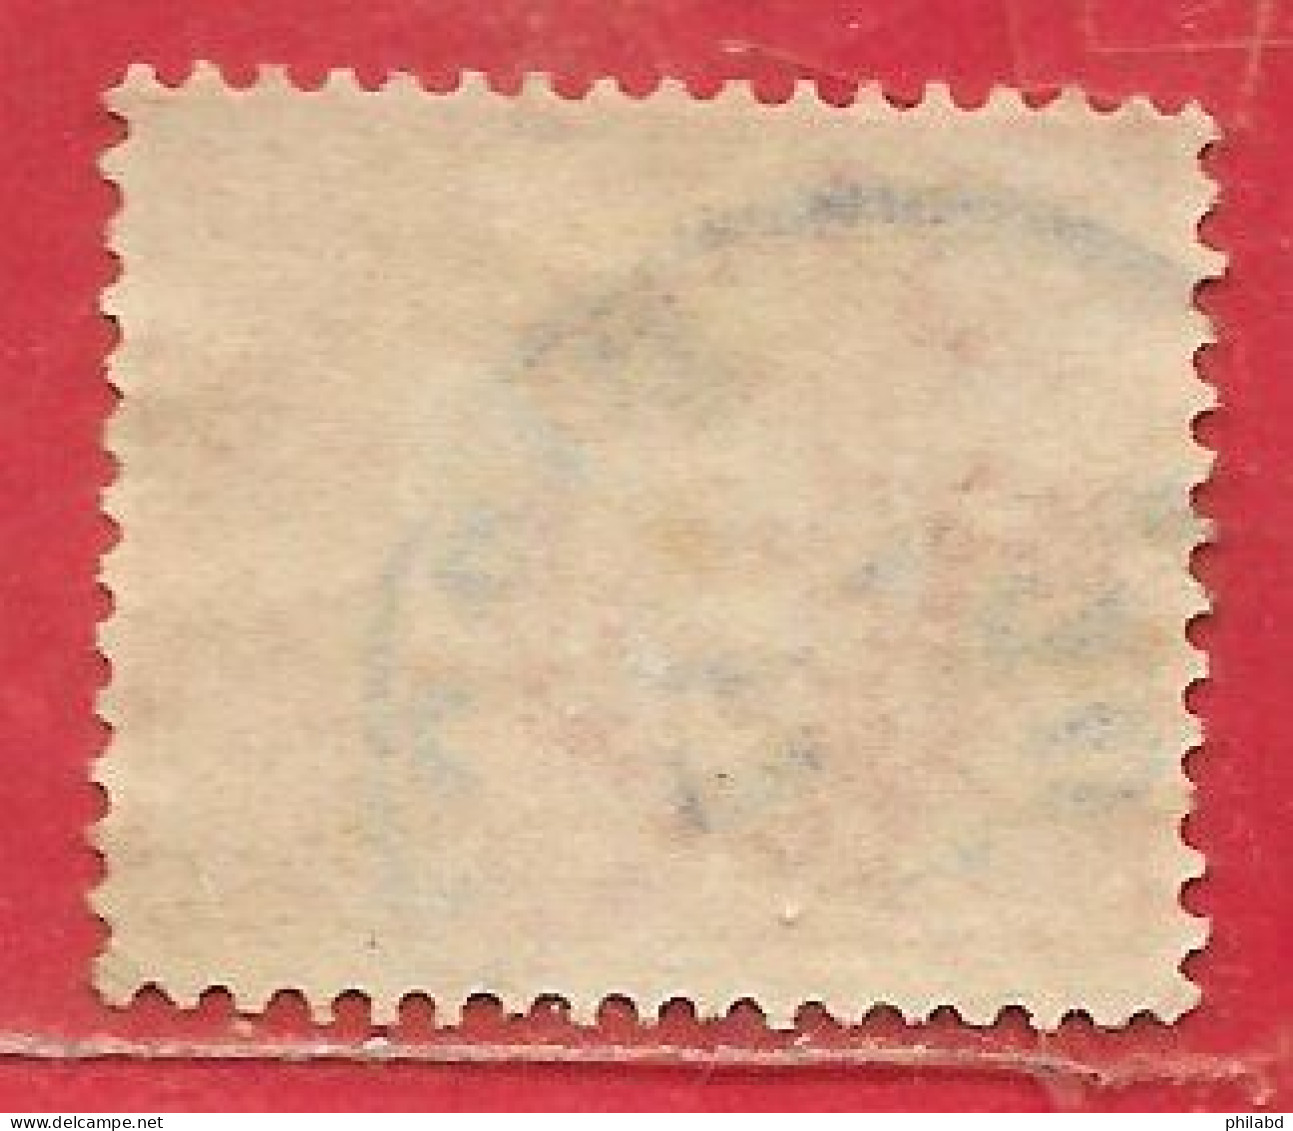 Italie Taxe/segnatassa N°2 10c Jaune-brun 1869 O - Postage Due